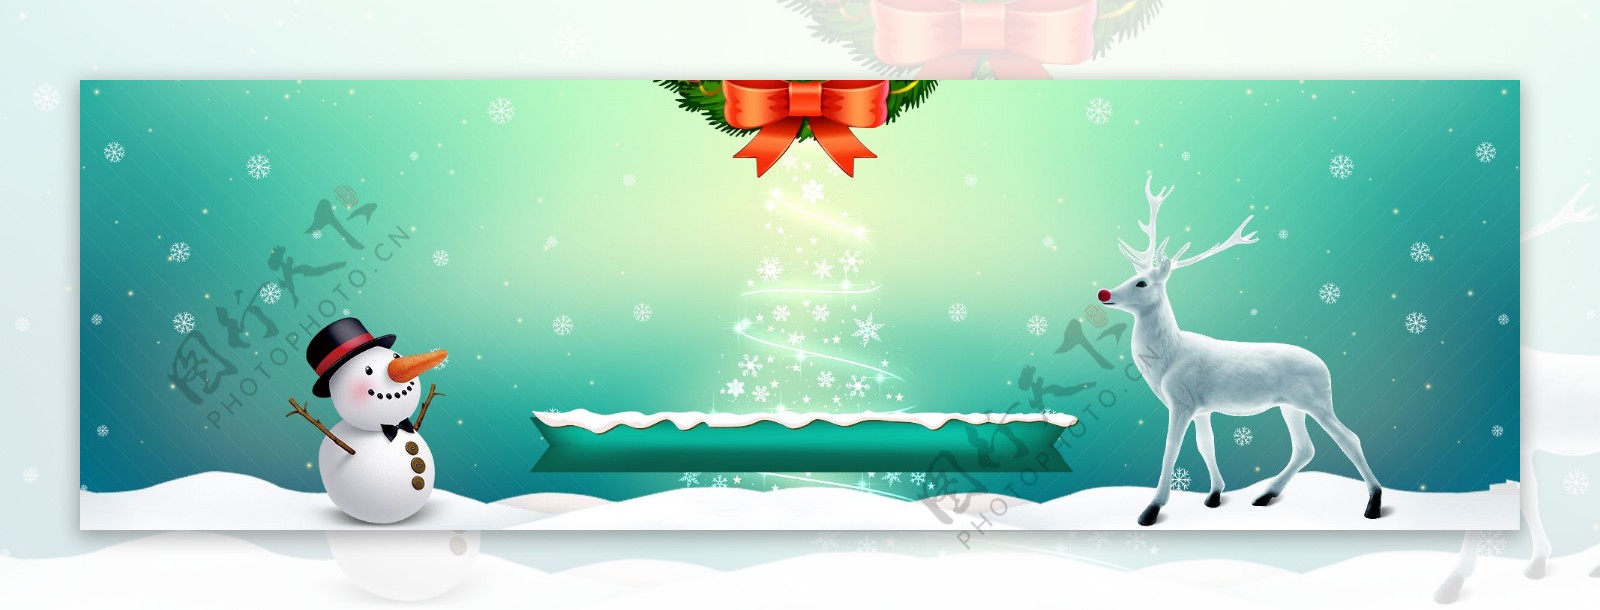 麋鹿圣诞树banner背景素材